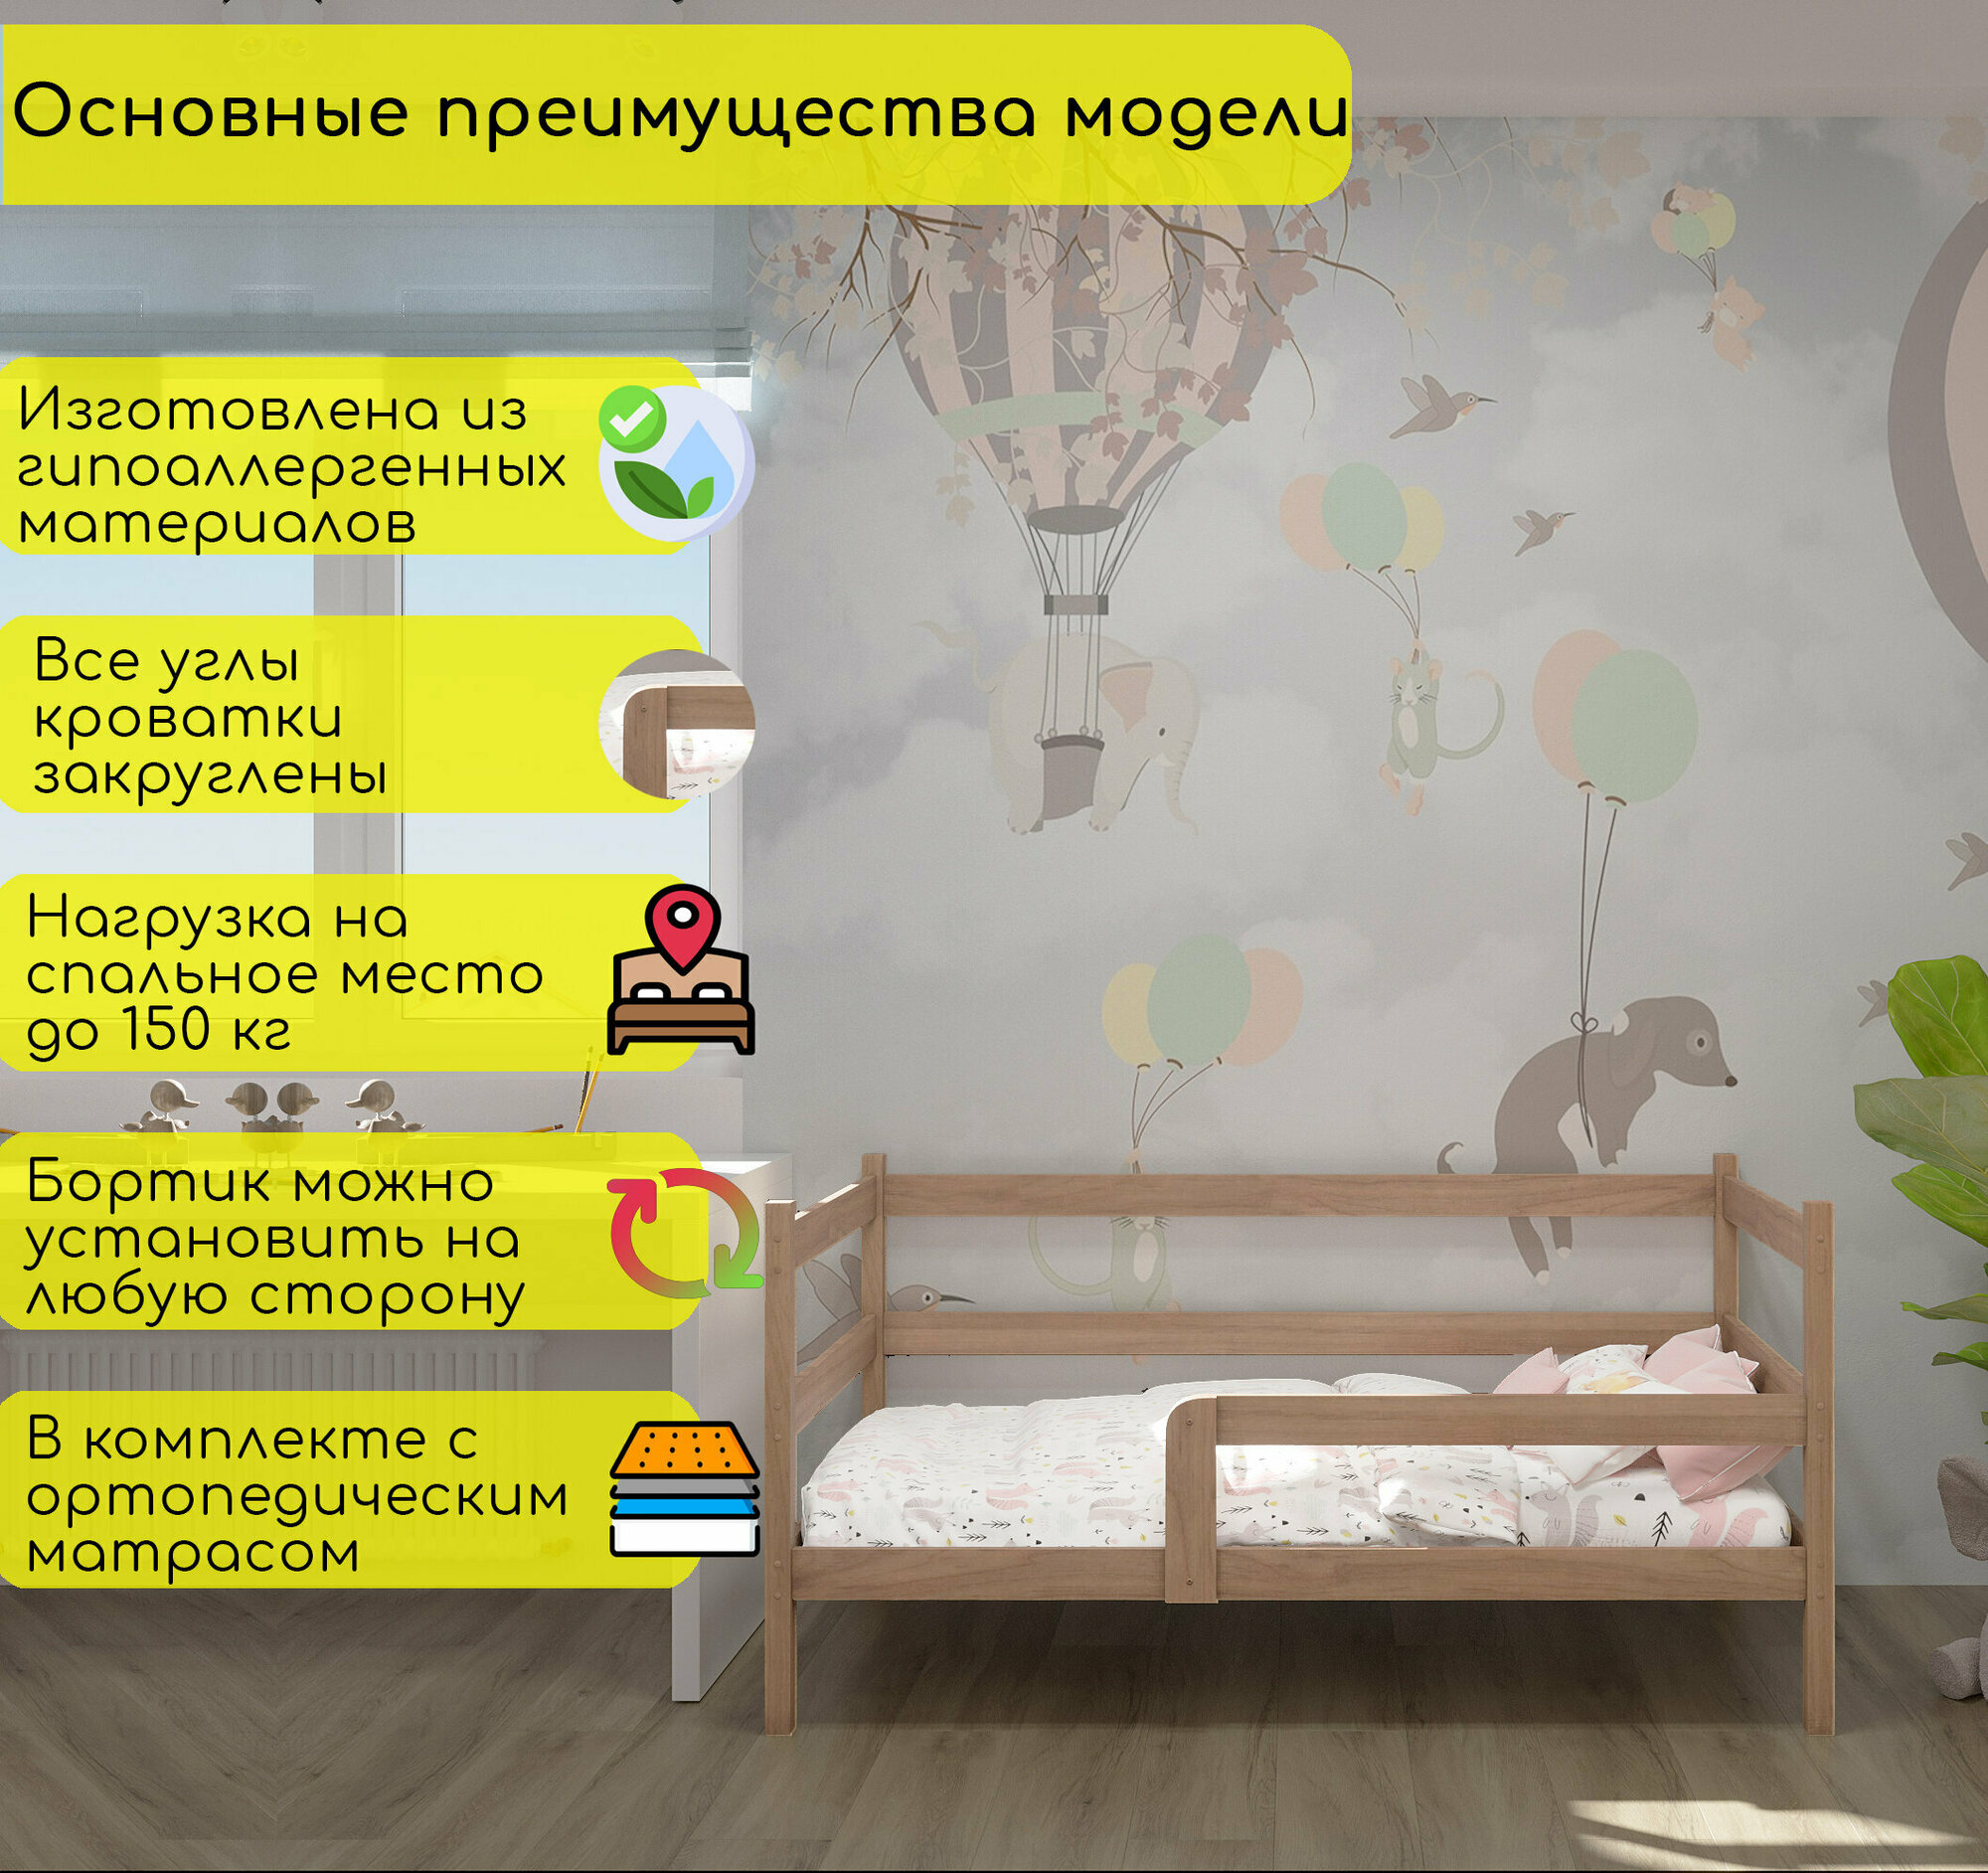 Кровать детская, подростковая "Софа", спальное место 180х90, в комплекте с ортопедическим матрасом, натуральный цвет, из массива